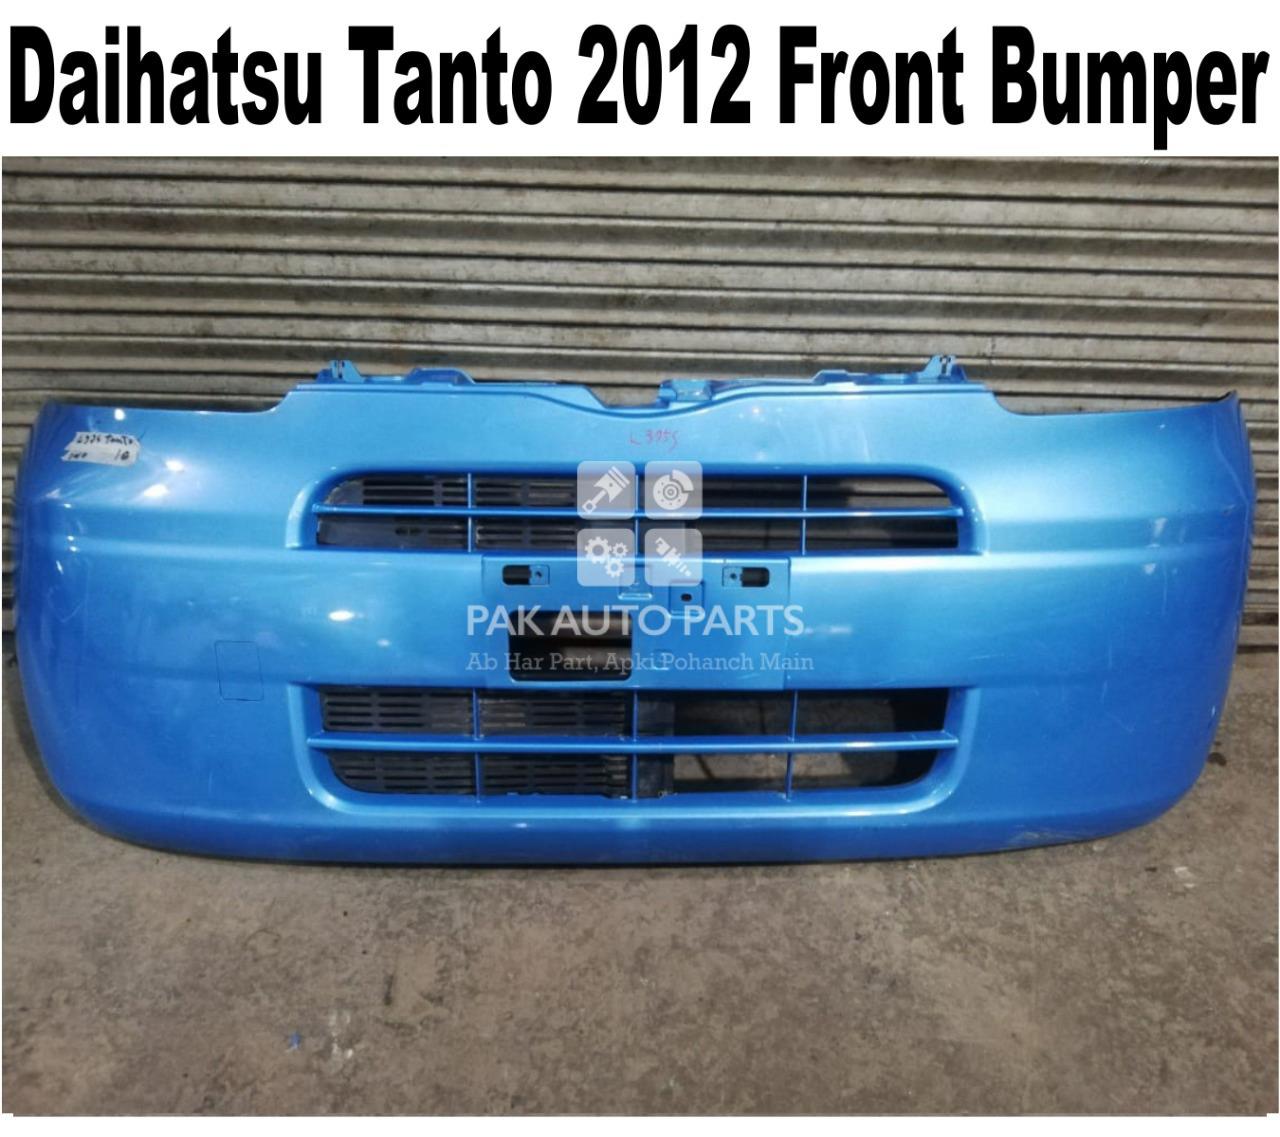 Picture of Daihatsu Tanto 2012 Front Bumper